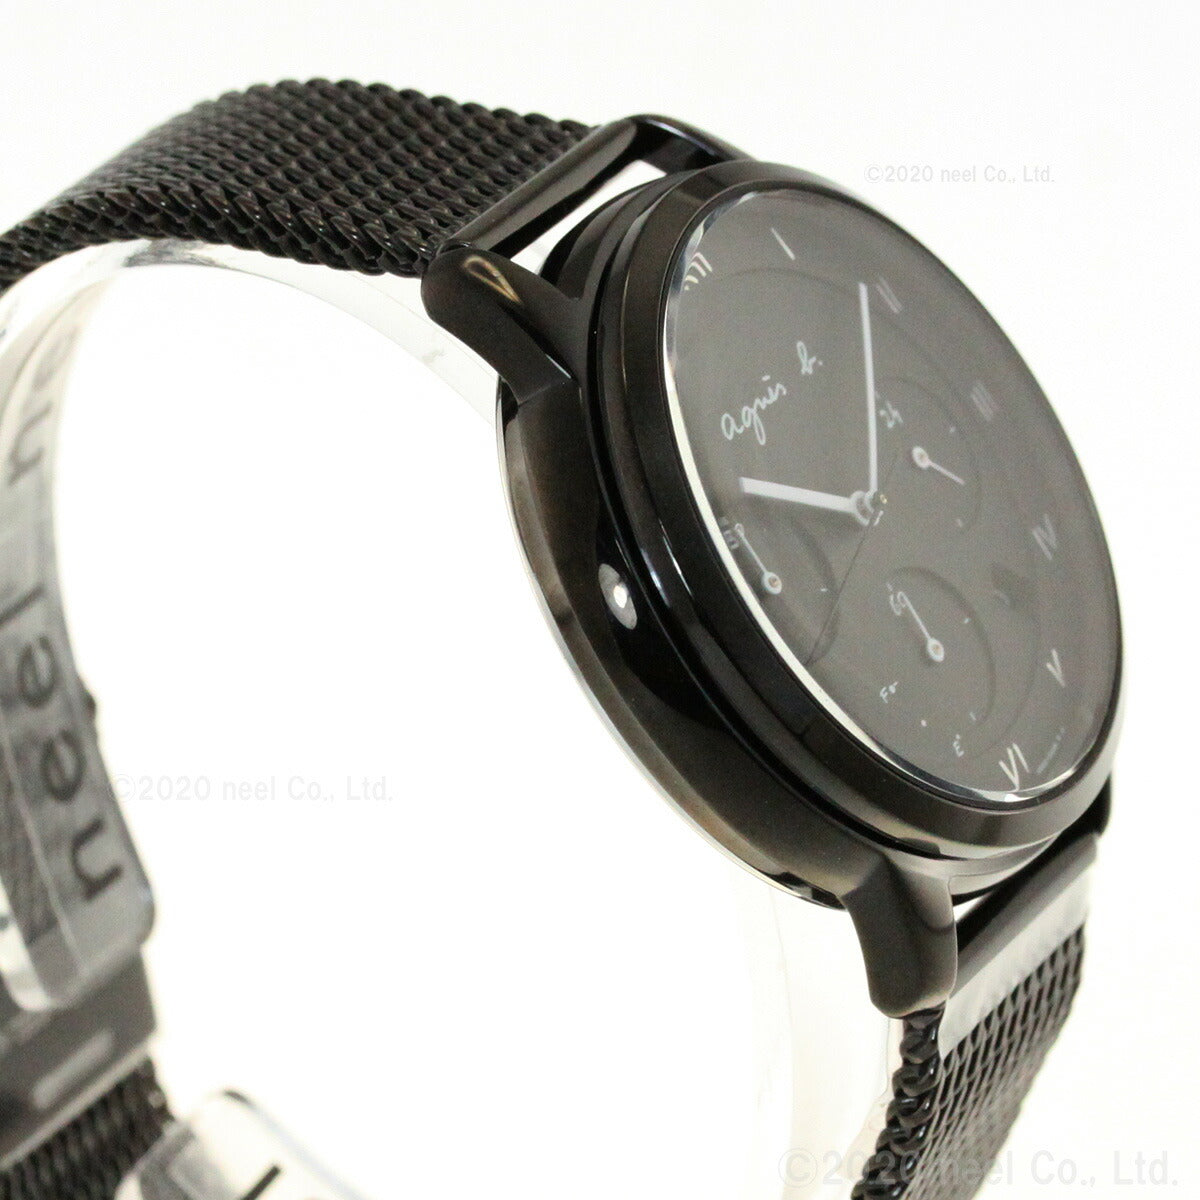 アニエスベー 時計 メンズ ソーラー ペア 腕時計 agnes b. マルチェロ Marcello FBRD939